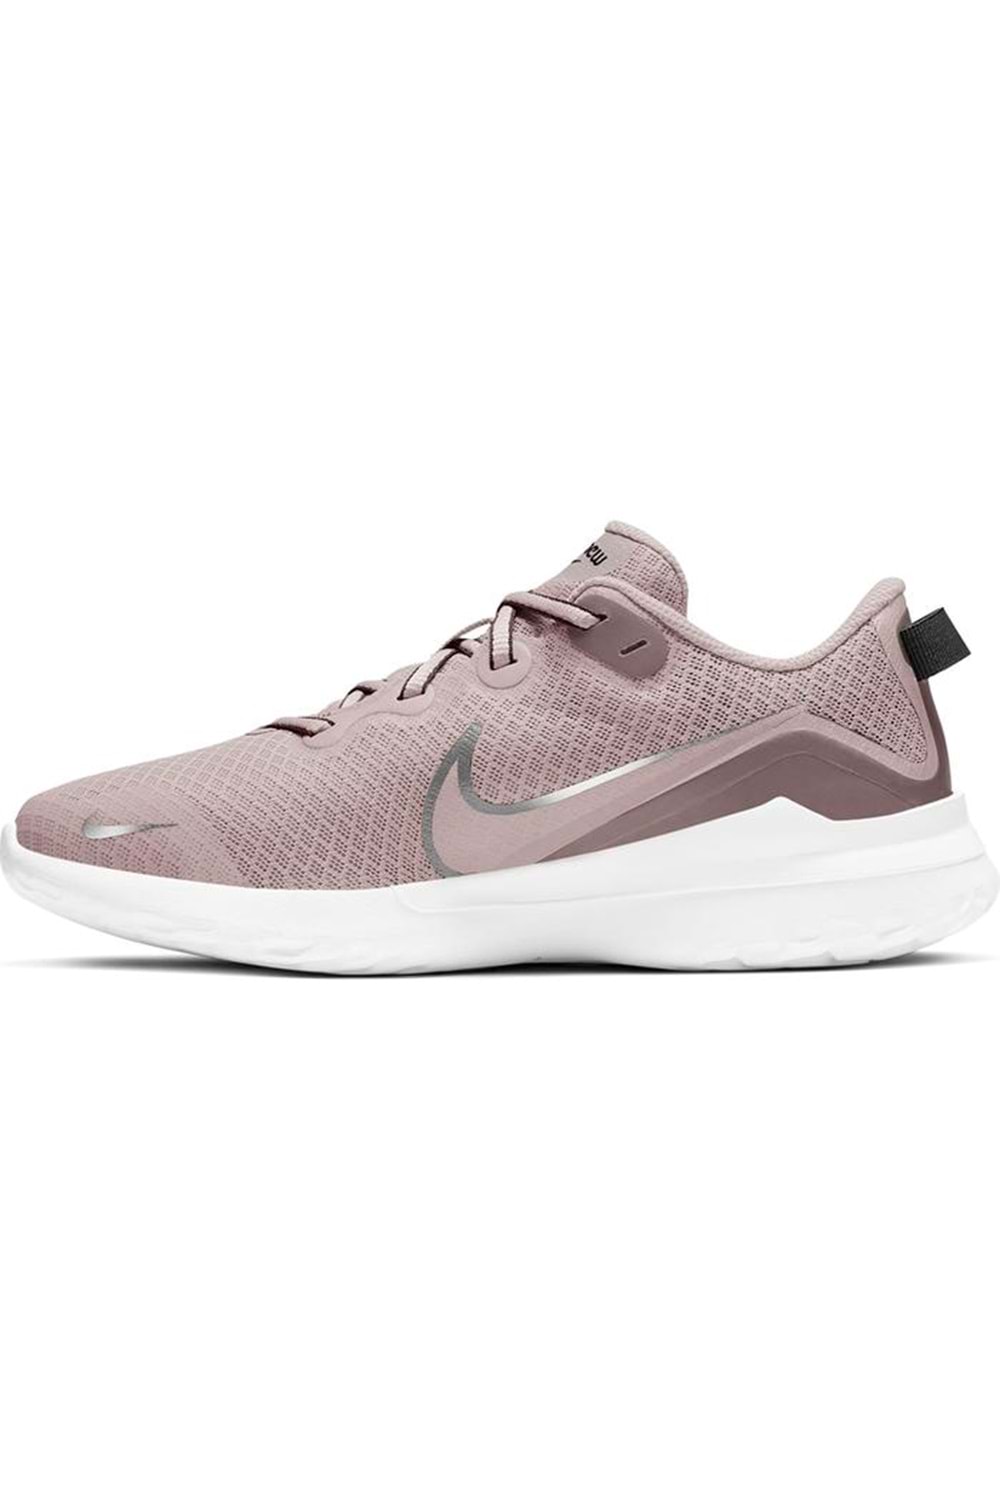 Nike Renew Arena 2 Kadın Koşu&Yürüyüş Ayakkabısı CD0314-200